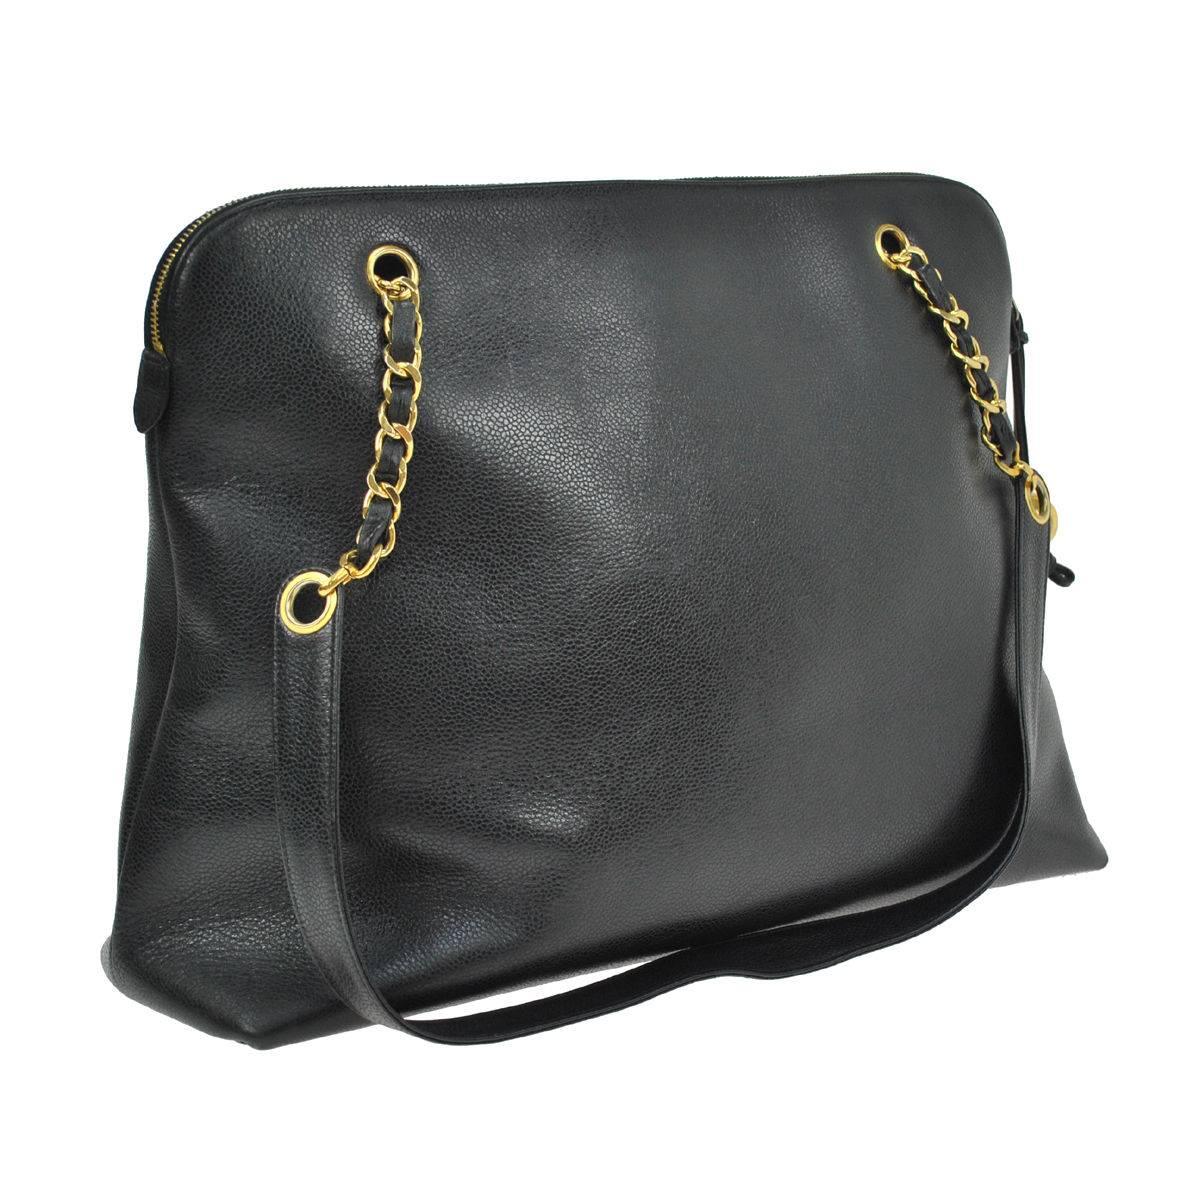 Chanel Black Caviar Leather Carryall Shopper Weekender Travel Shoulder Bag 1